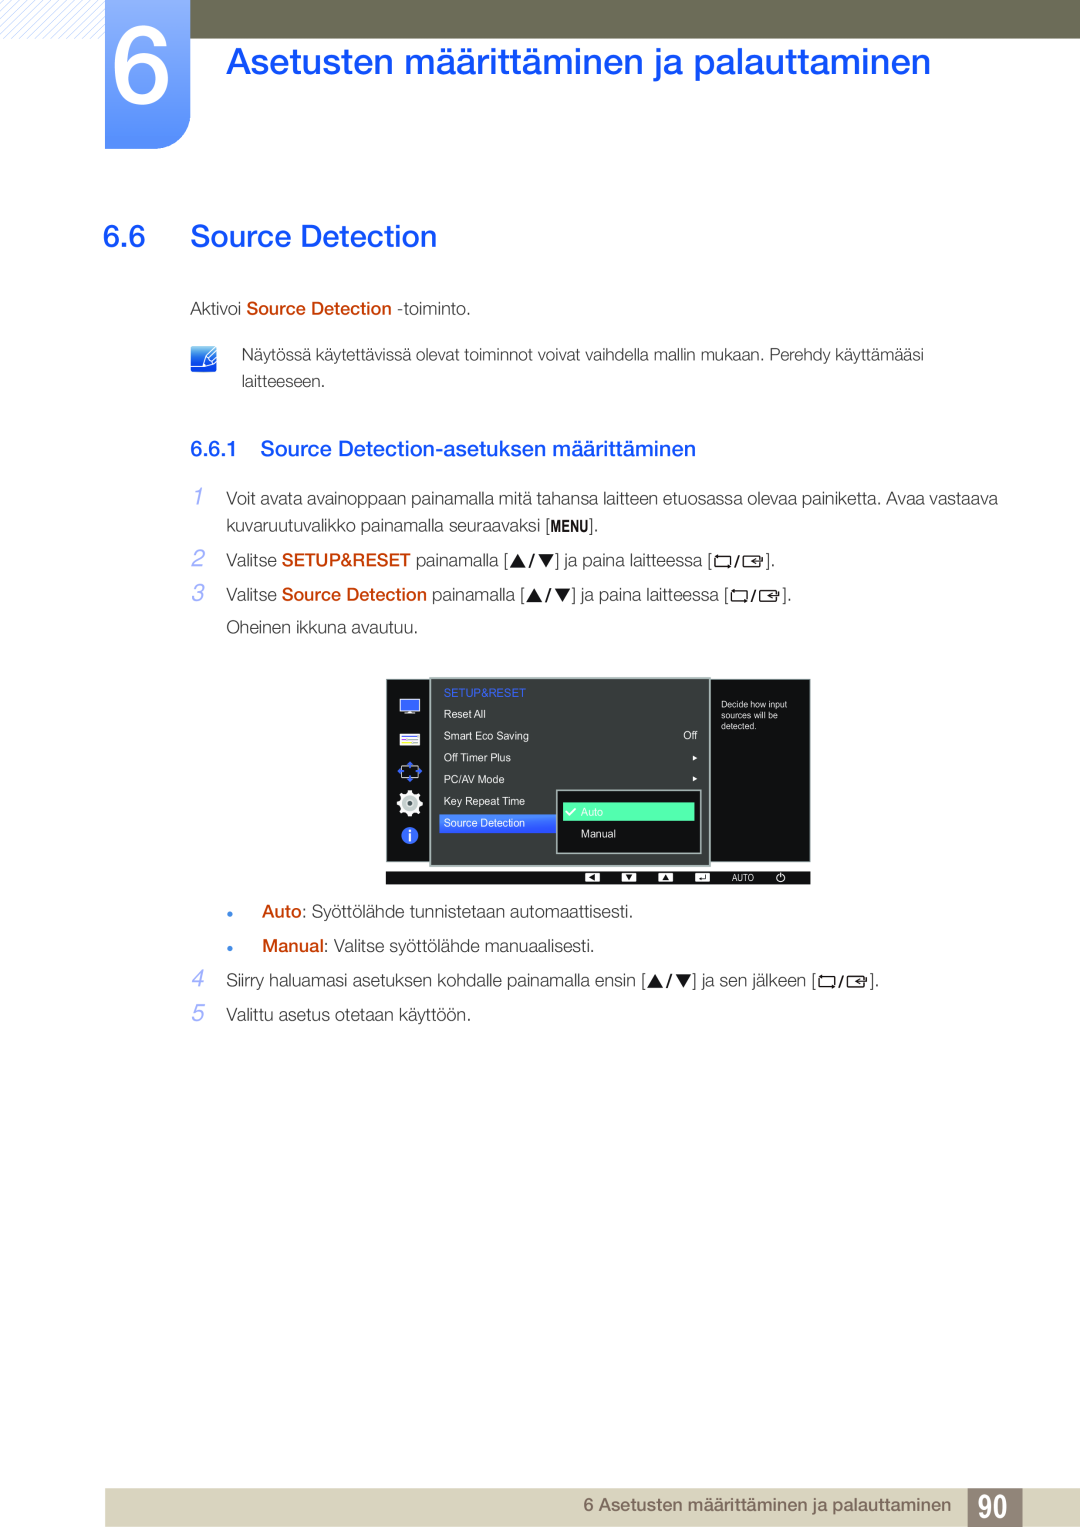 Samsung LS24E45UDLC/XE manual Source Detection-asetuksen määrittäminen, Asetusten määrittäminen ja palauttaminen 